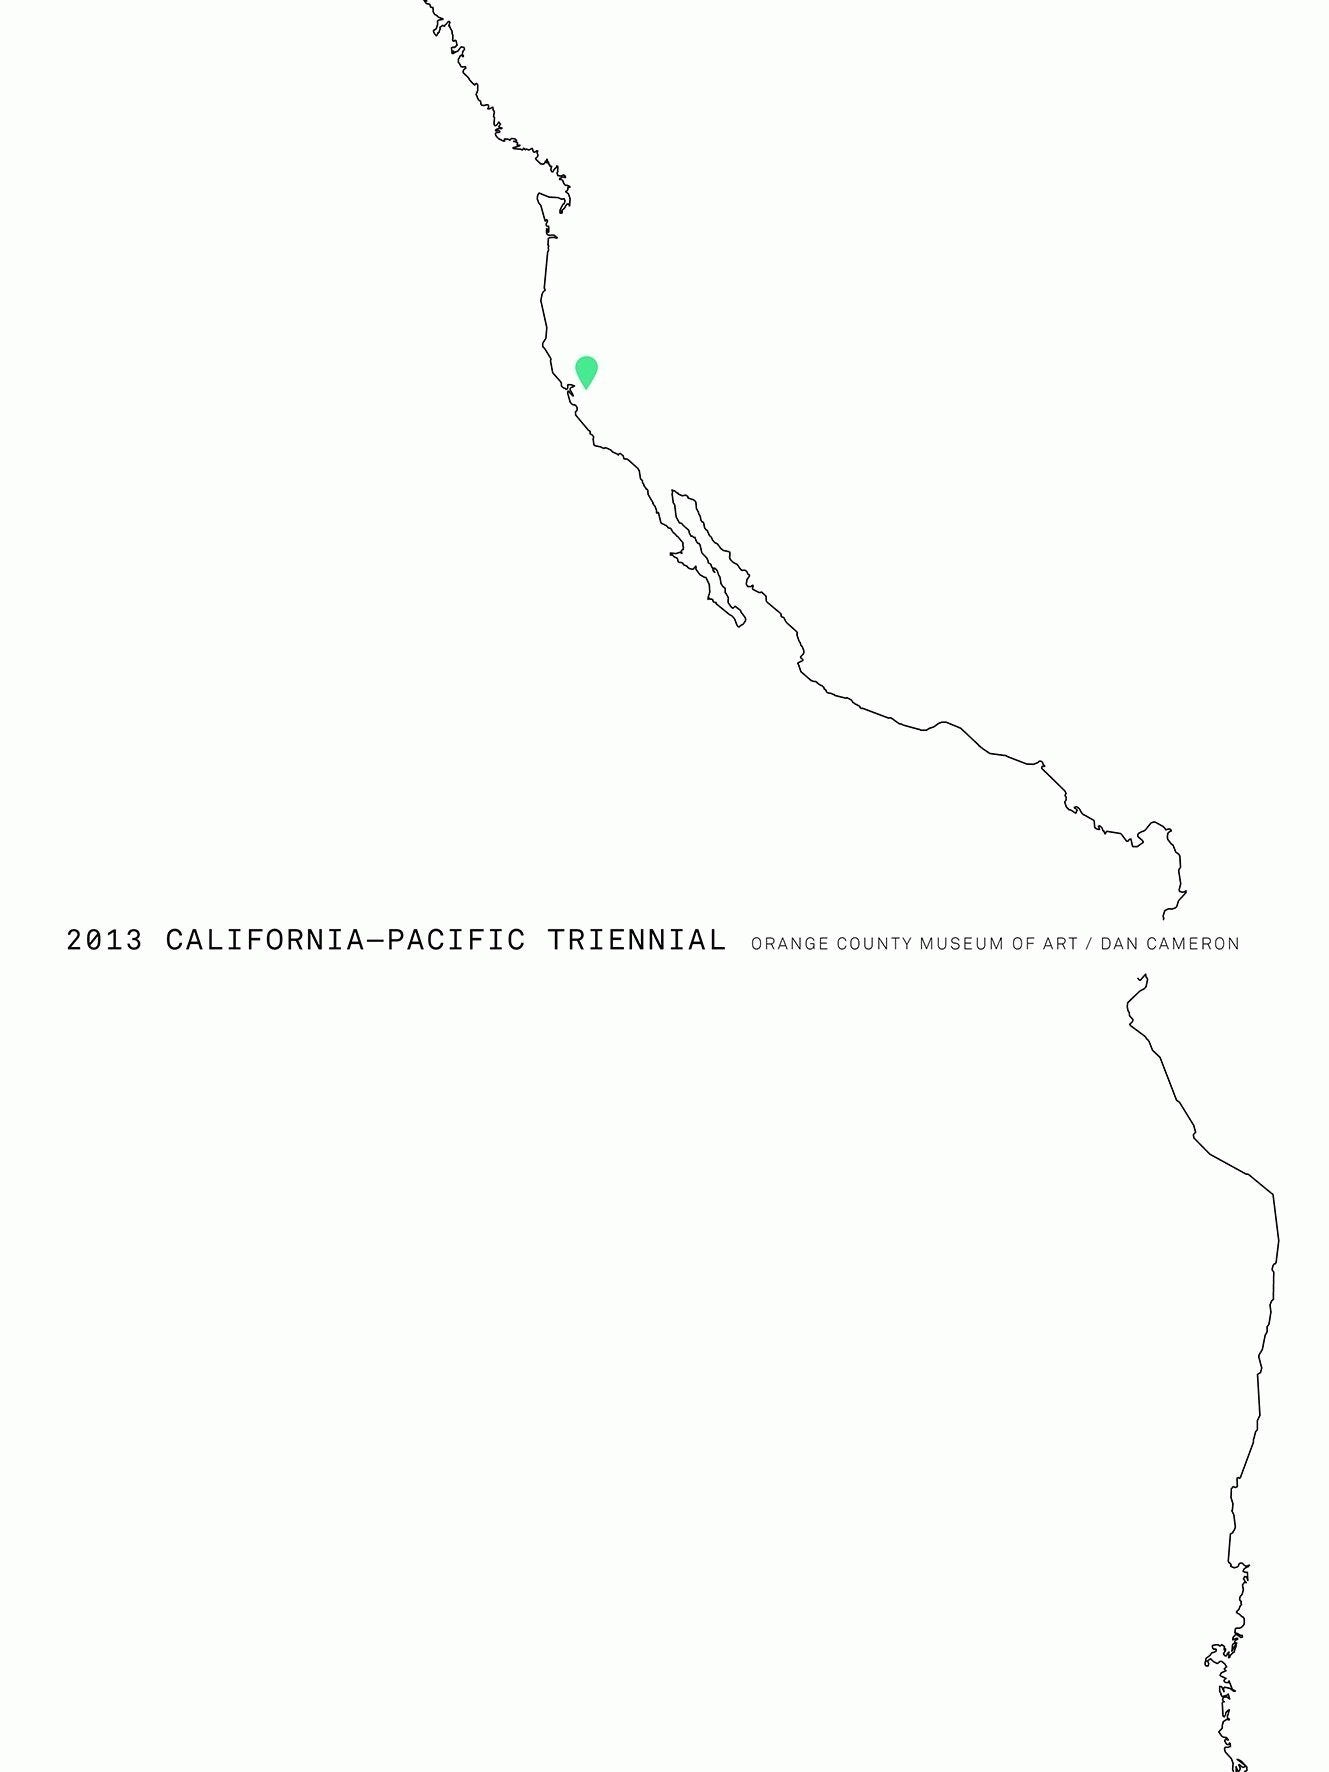 2013 California-Pacific Triennial